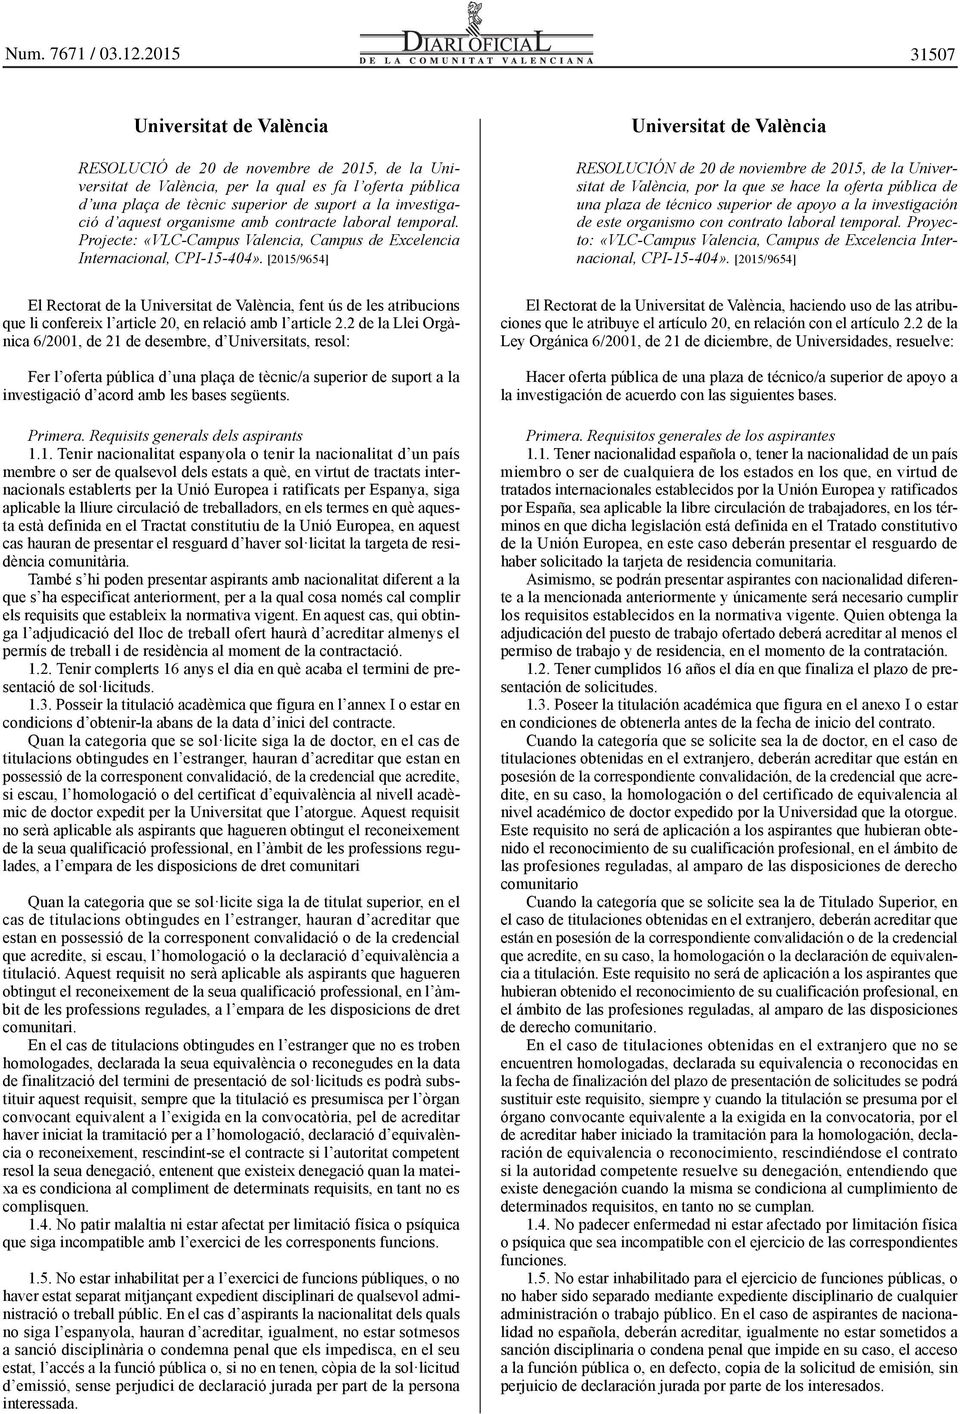 [2015/9654] El Rectorat de la Universitat de València, fent ús de les atribucions que li confereix l article 20, en relació amb l article 2.